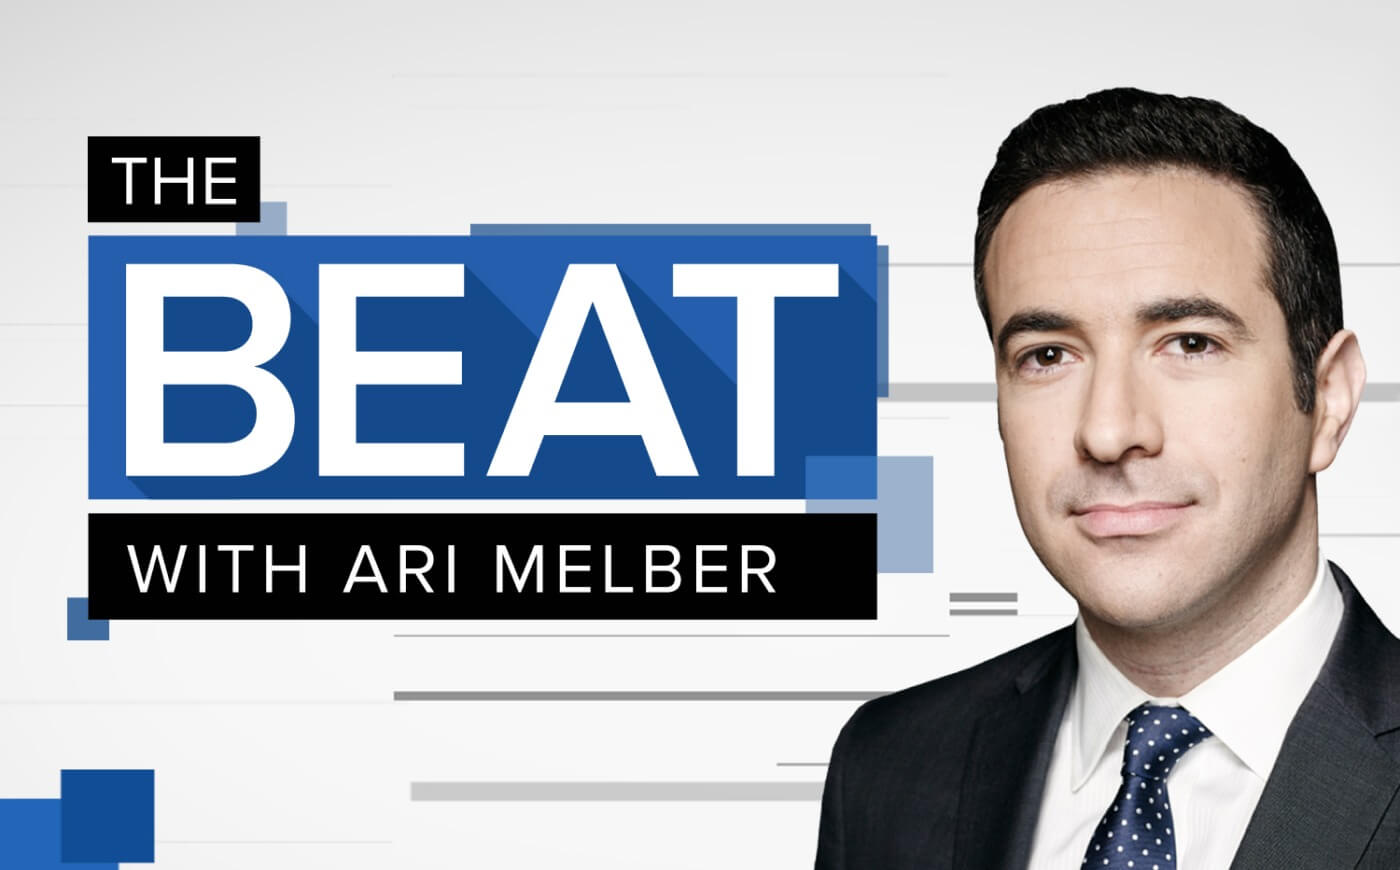 The Beat with Ari Melber 5th Anniversary White Mug